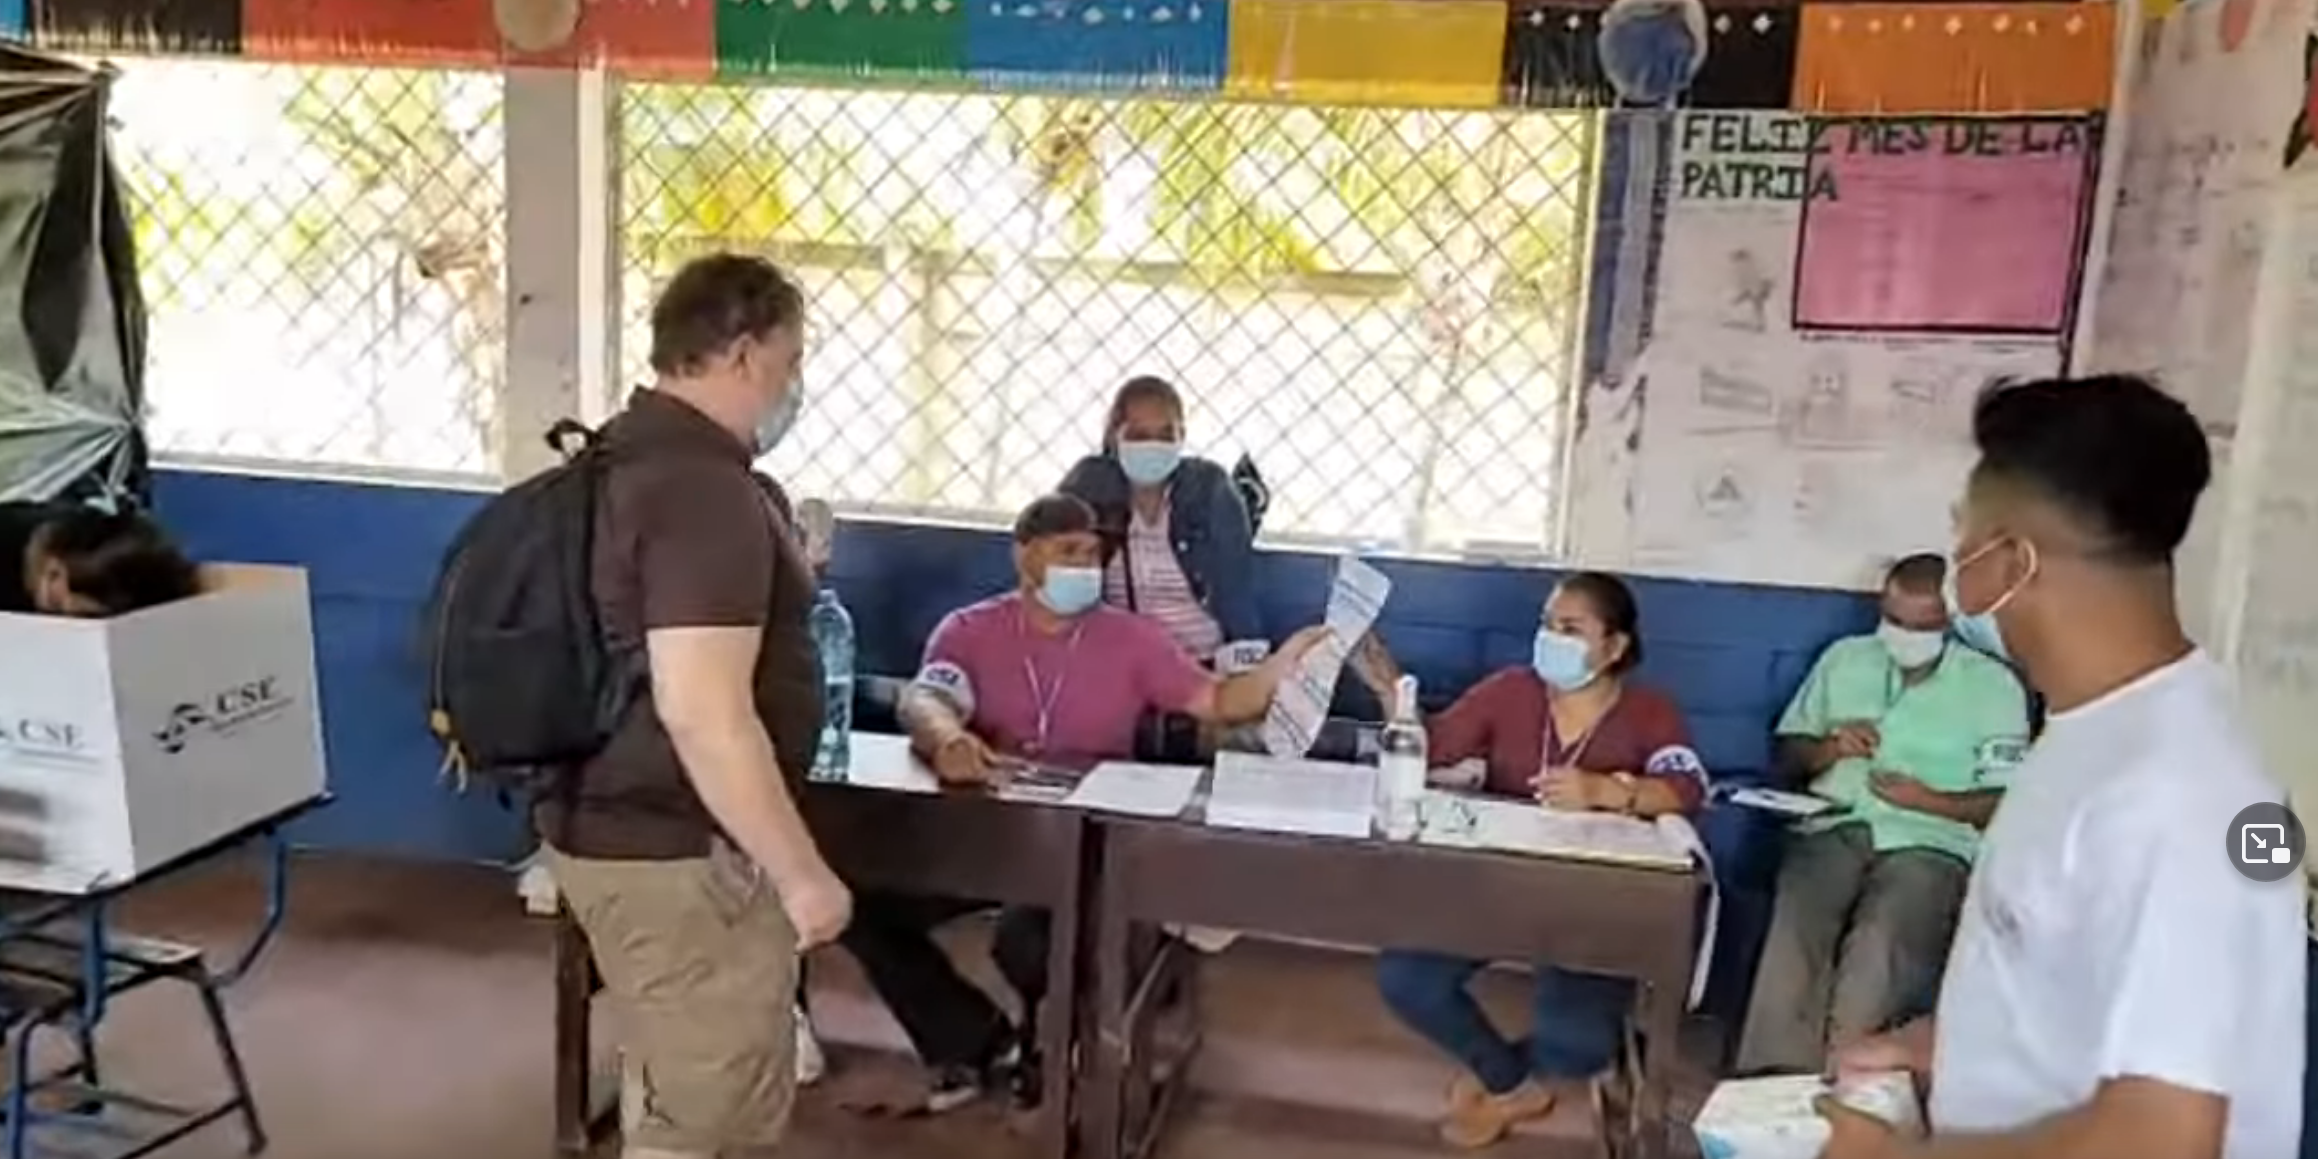 Podcast host at Nicaraguan polling station